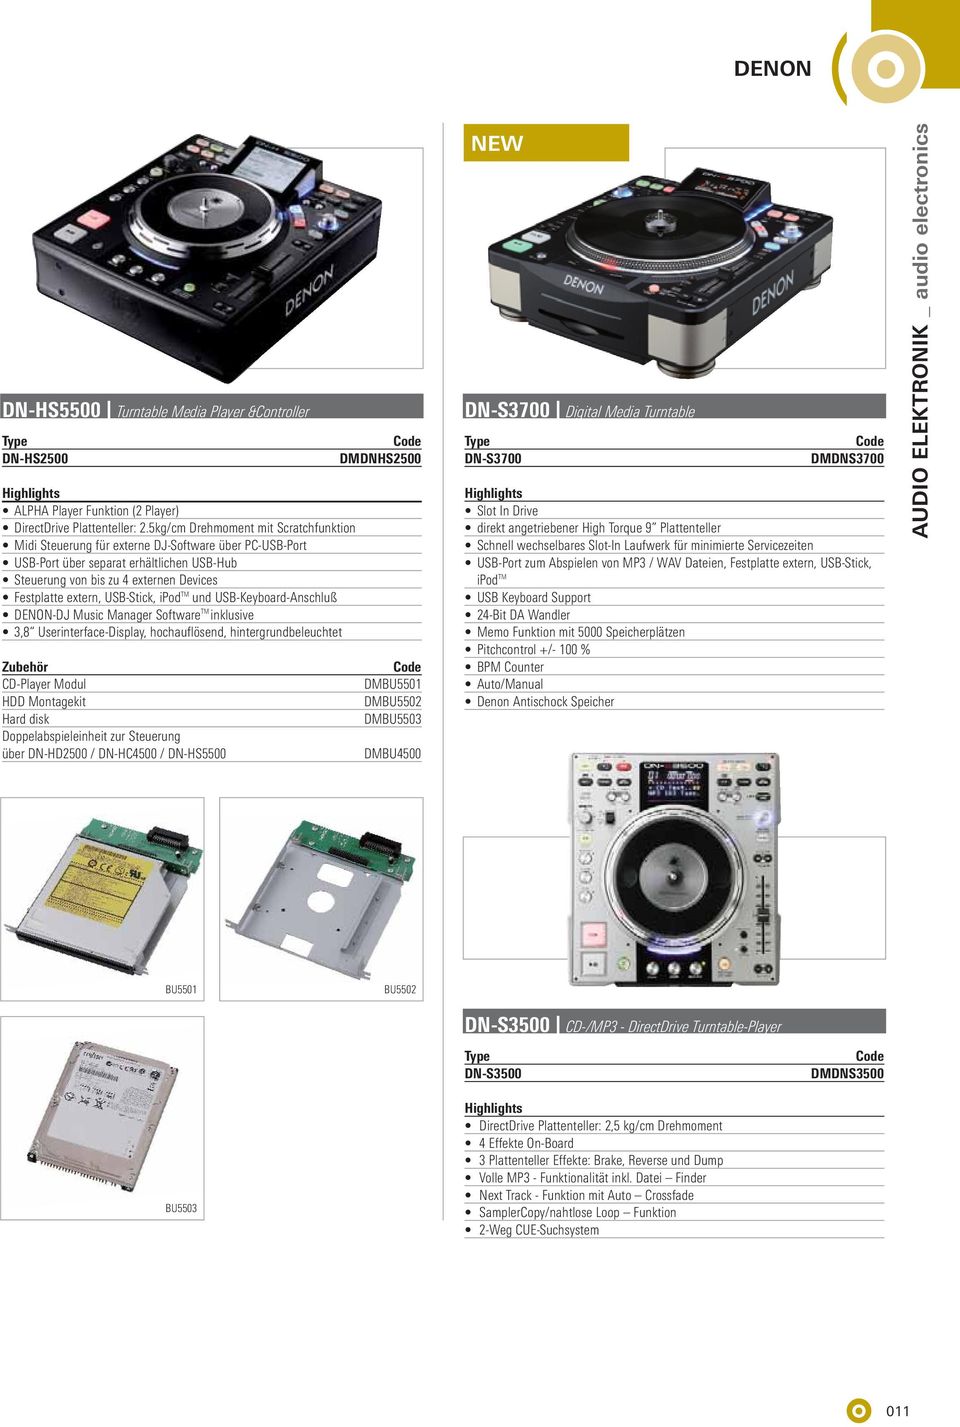 USB-Stick, ipod TM und USB-Keyboard-Anschluß DENN-DJ Music Manager Software TM inklusive 3,8 Userinterface-Display, hochauflösend, hintergrundbeleuchtet Zubehör CD-Player Modul HDD Montagekit Hard